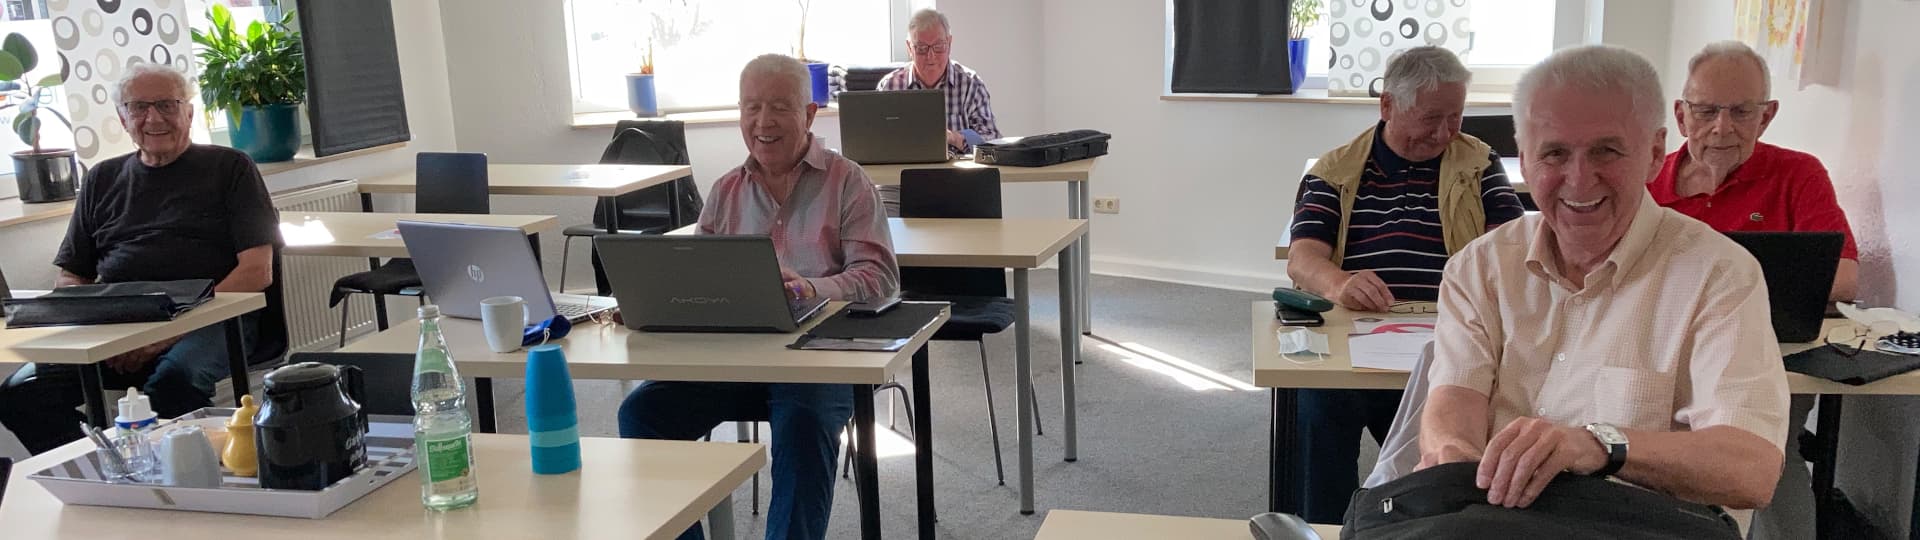 Workshop Laptop und Notebook in Bochum